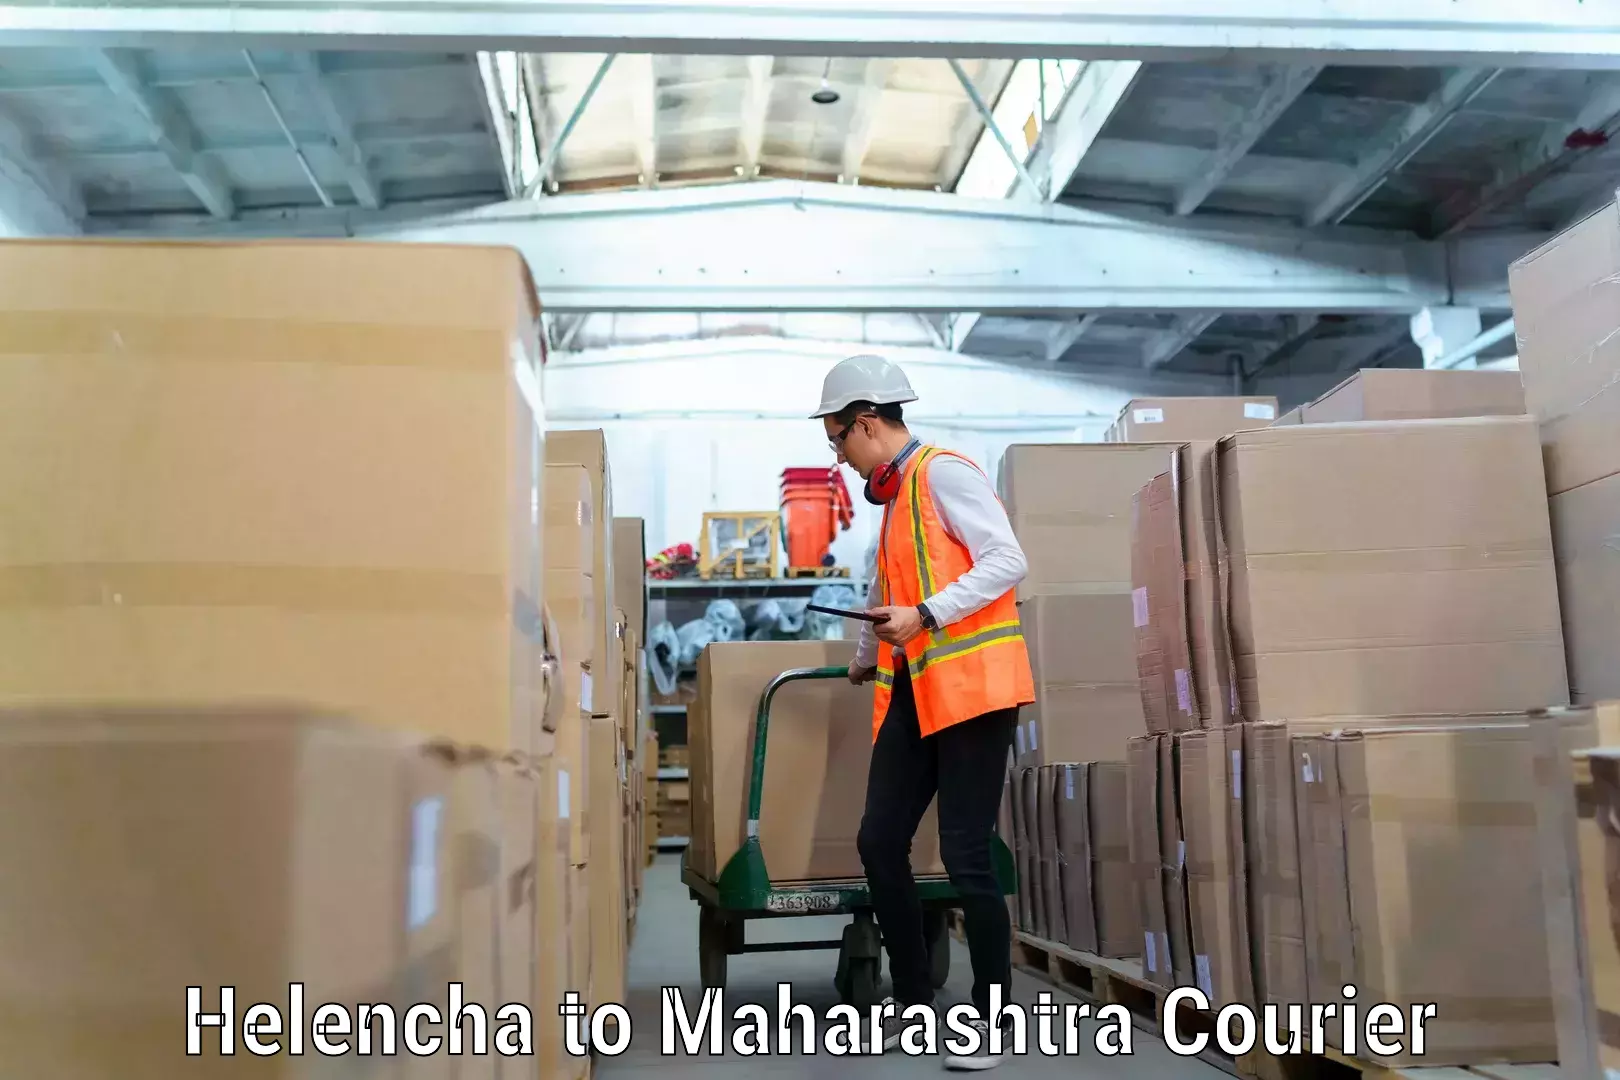 Furniture transport specialists Helencha to Maharashtra